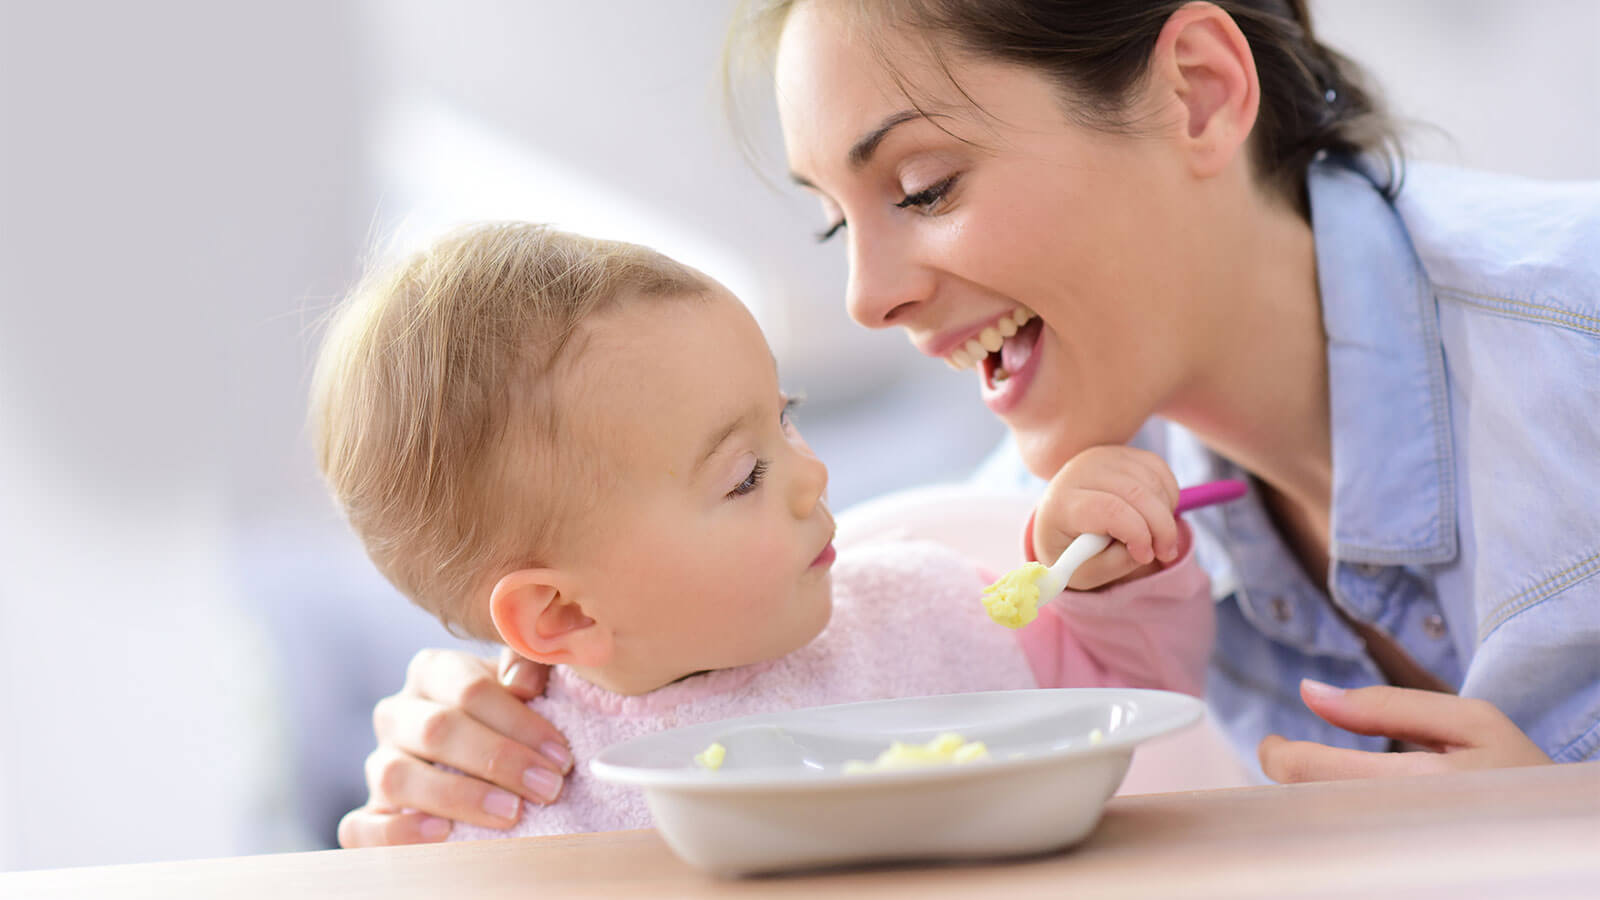 Lo svezzamento del bambino o alimentazione complementare a richiesta?